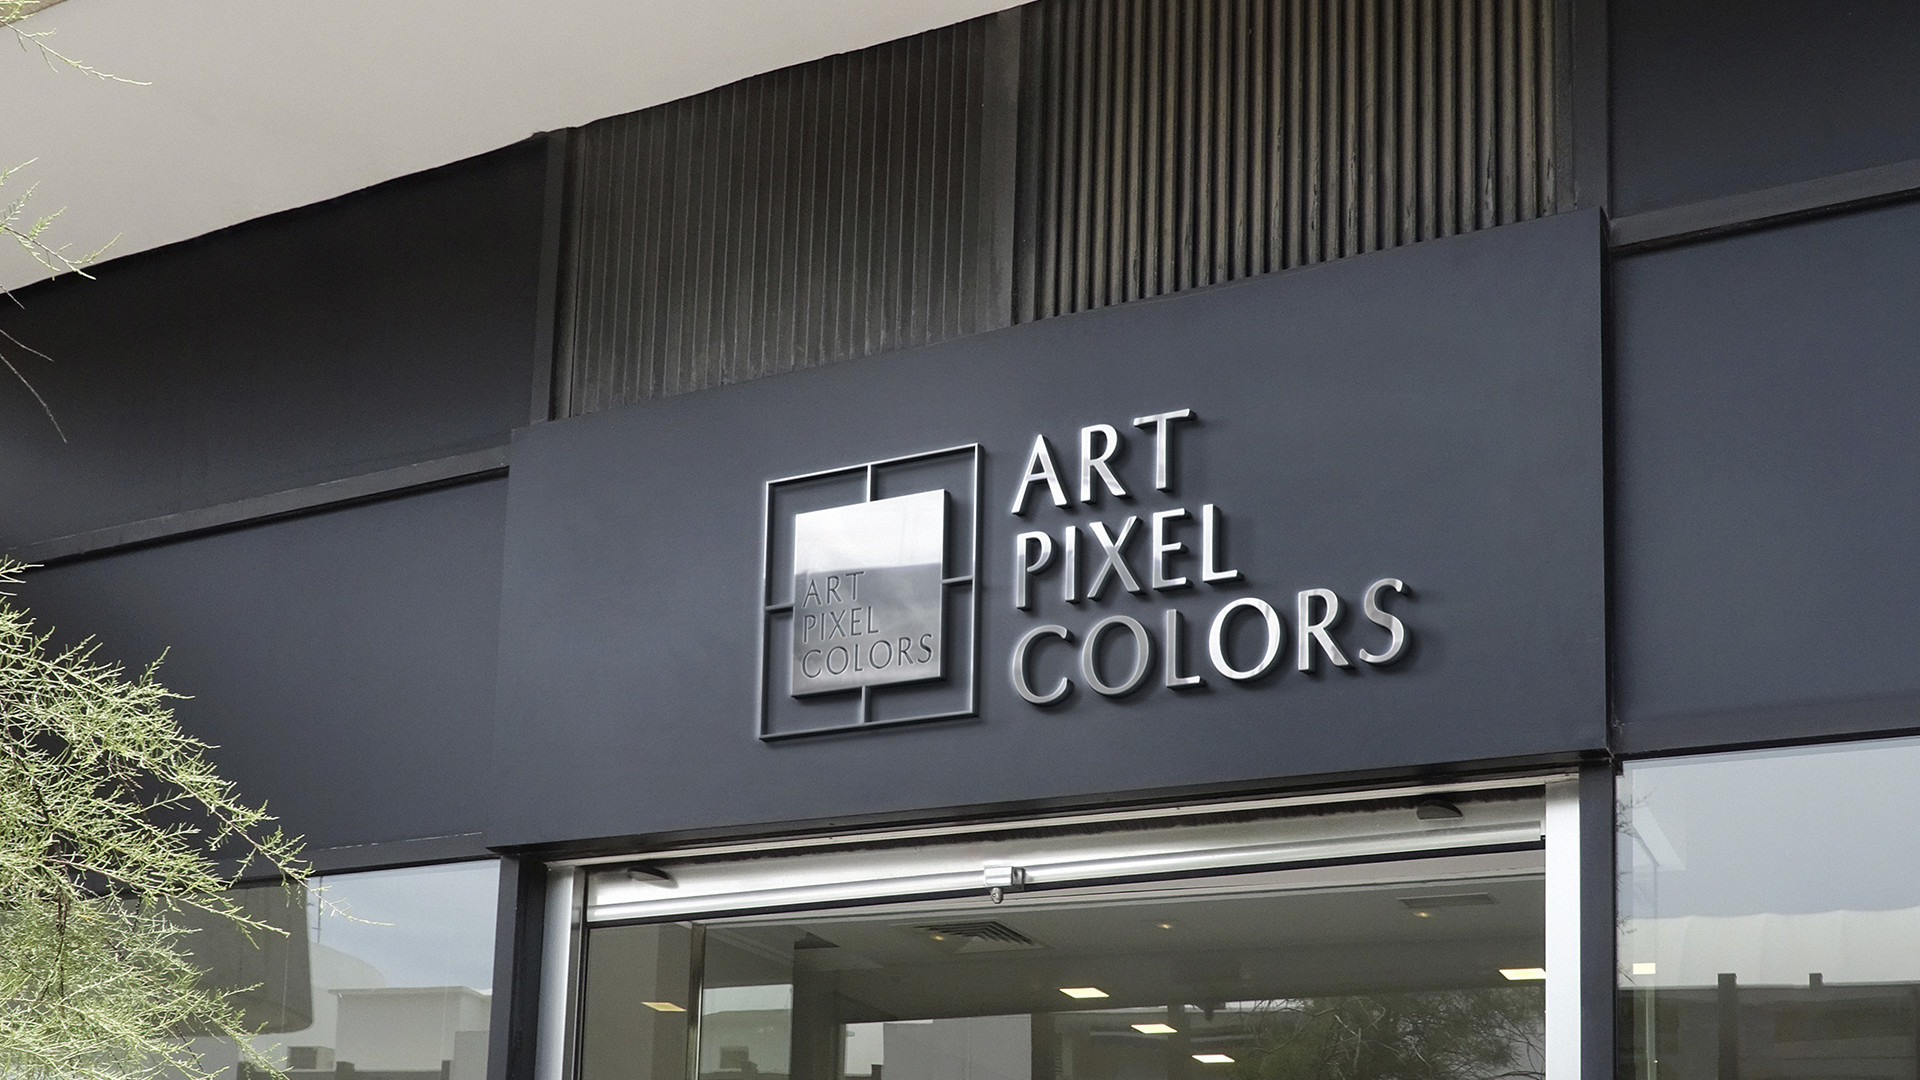 Art Pixel Colors